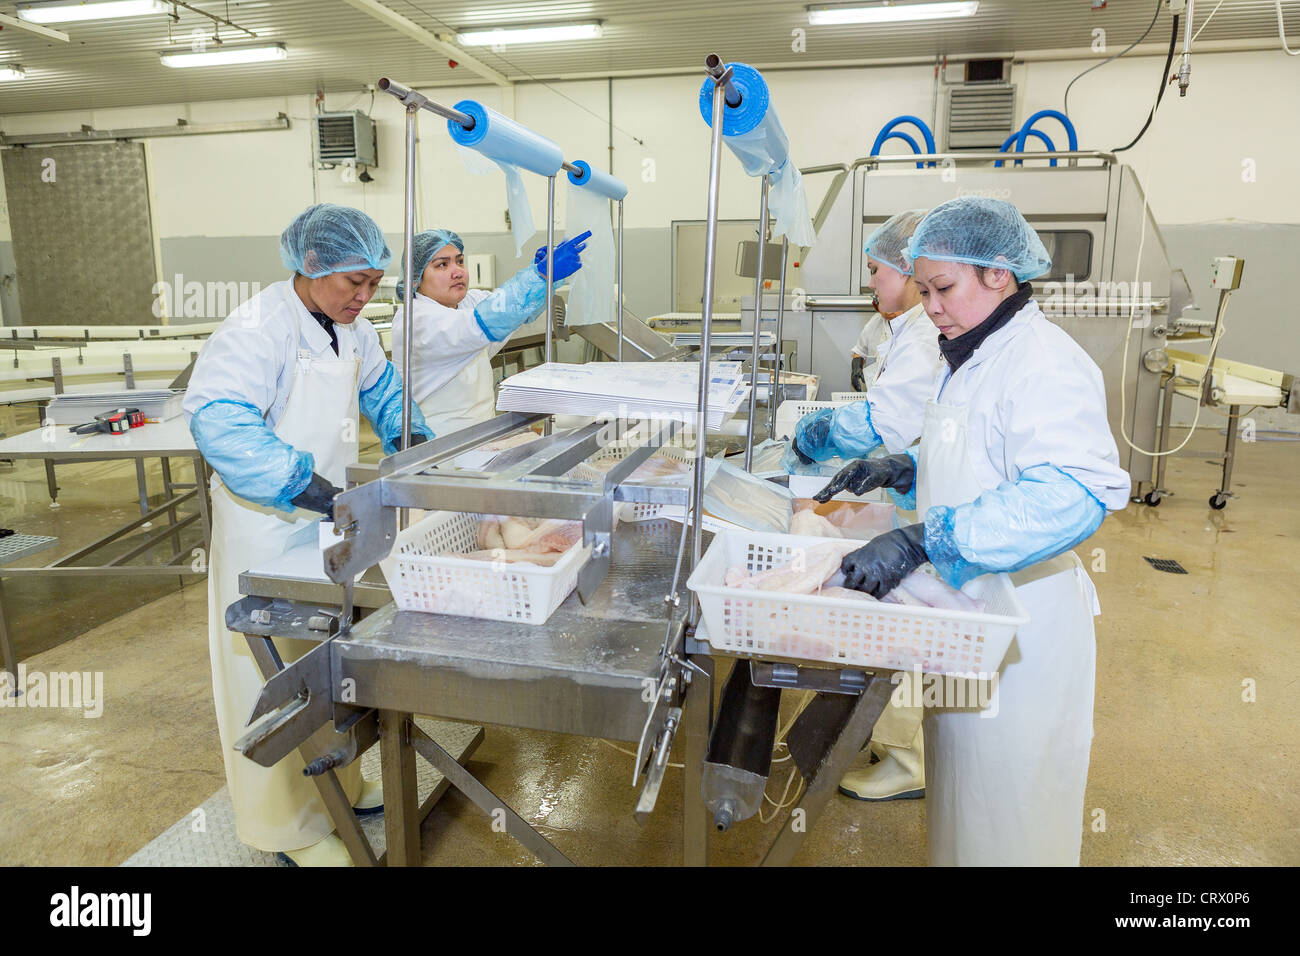 La lavorazione del pesce in fabbrica. I lavoratori sono la preparazione di baccalà per il mercato. A ovest di fiordi, Islanda Foto Stock